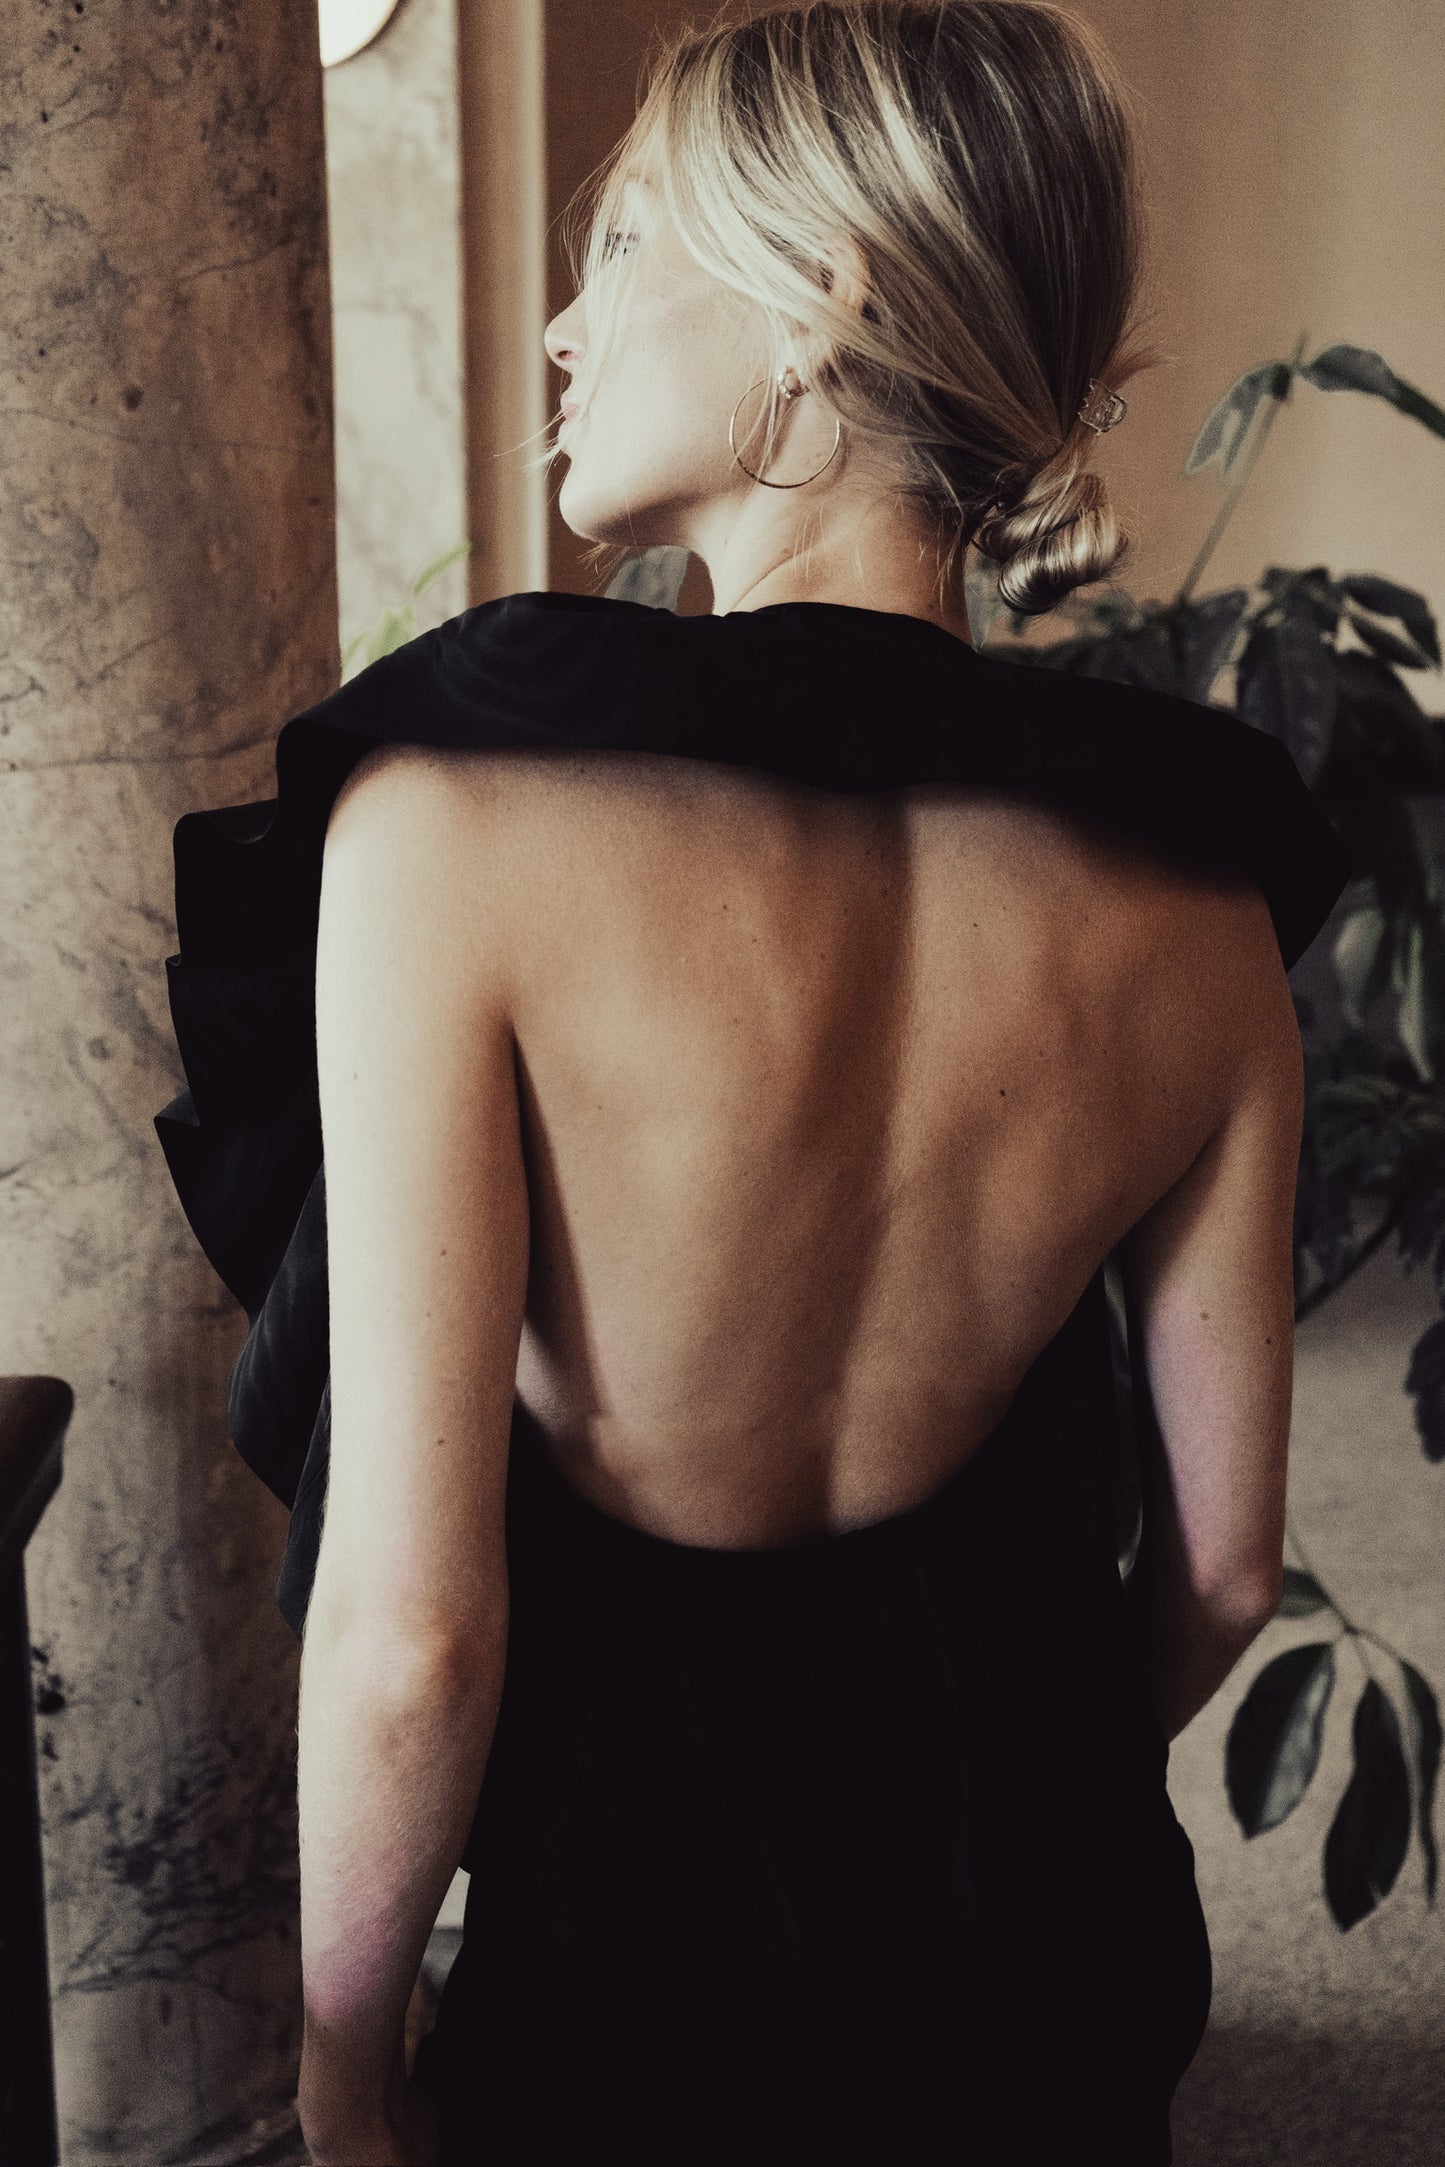 Pierre Cardin Black Velvet Evening Dress